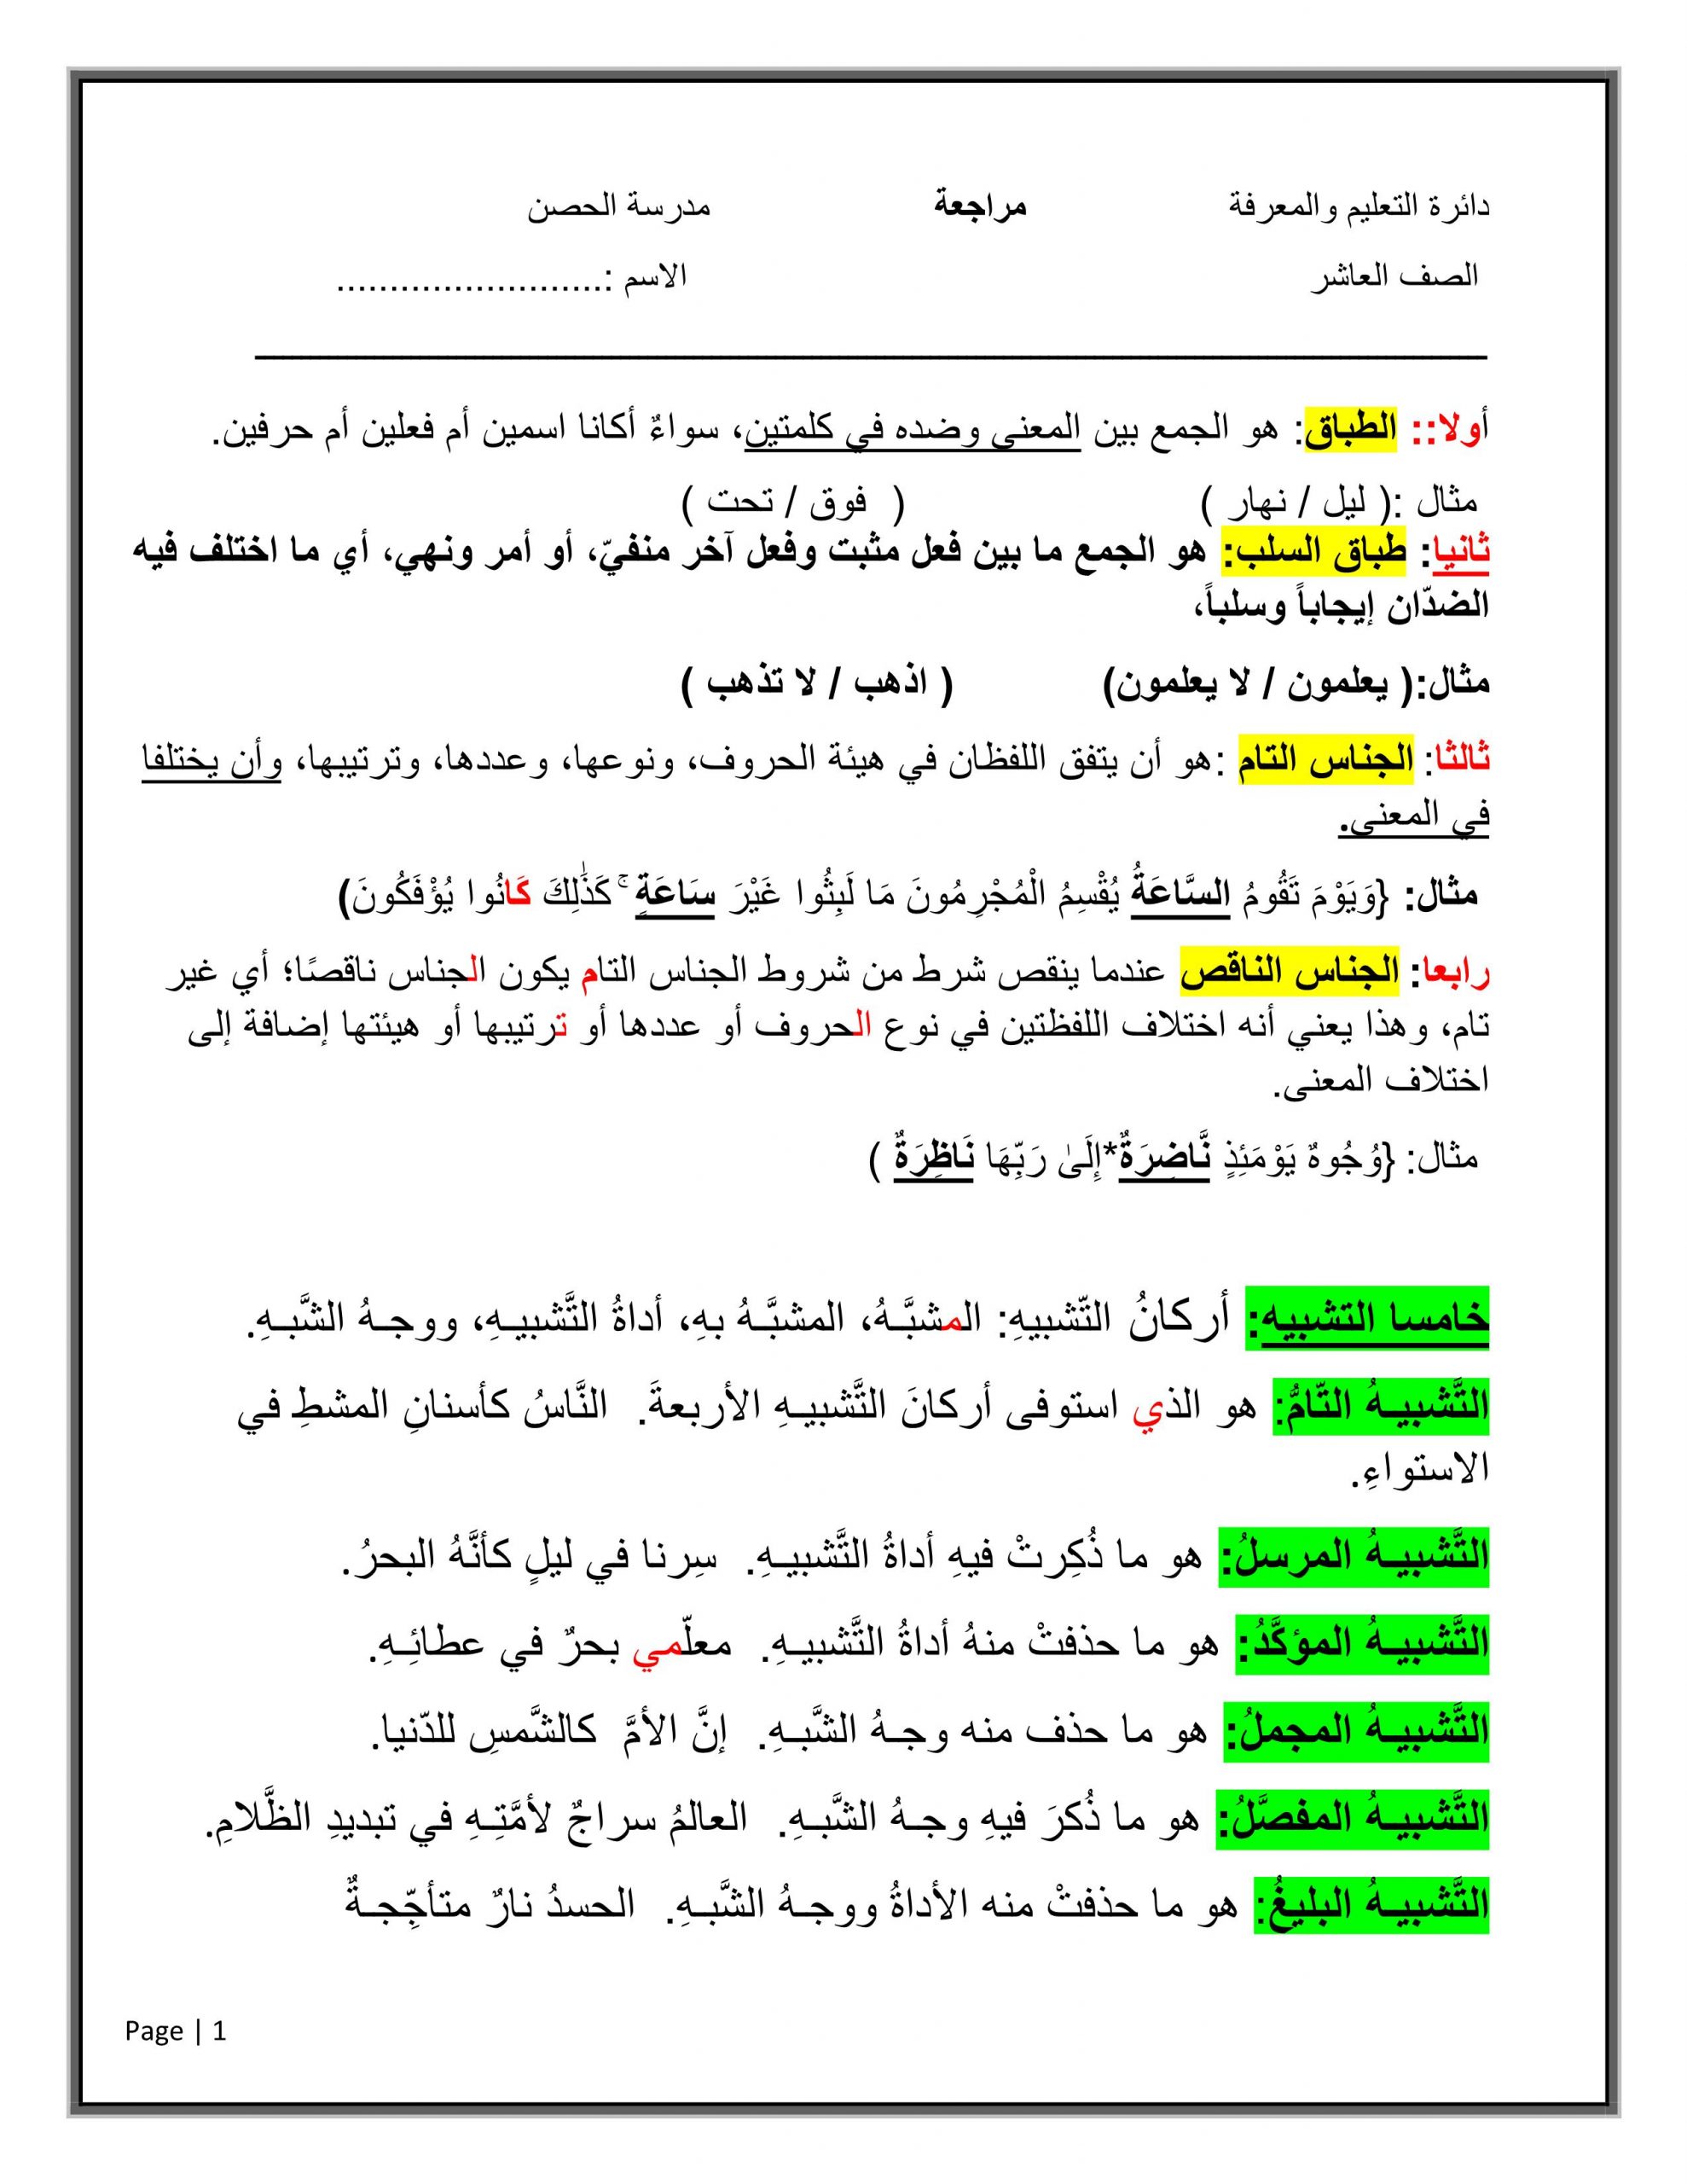 شرح واوراق عمل مراجعة الصف العاشر مادة اللغة العربية